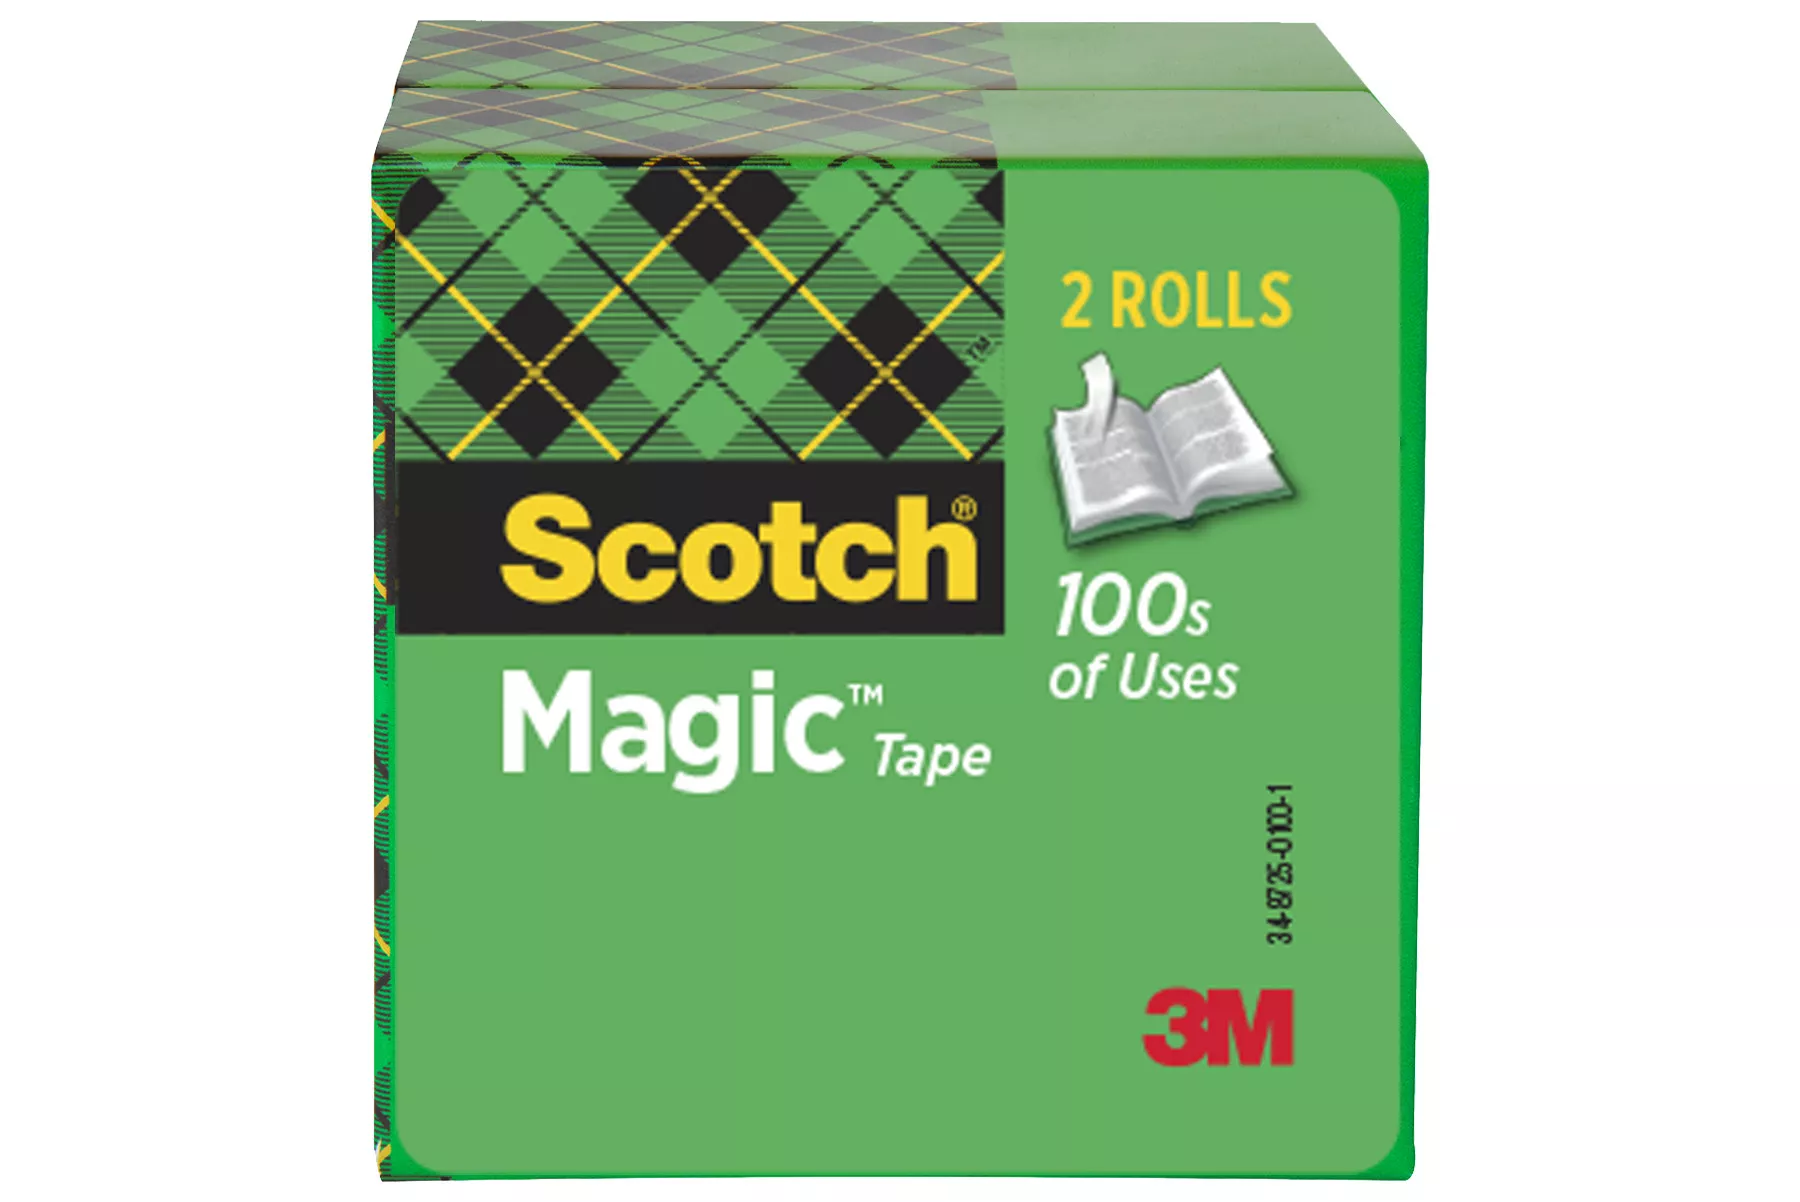 Scotch® Magic™ Tape 810-2P34-72, 3/4 in x 2592 in, 2 pk